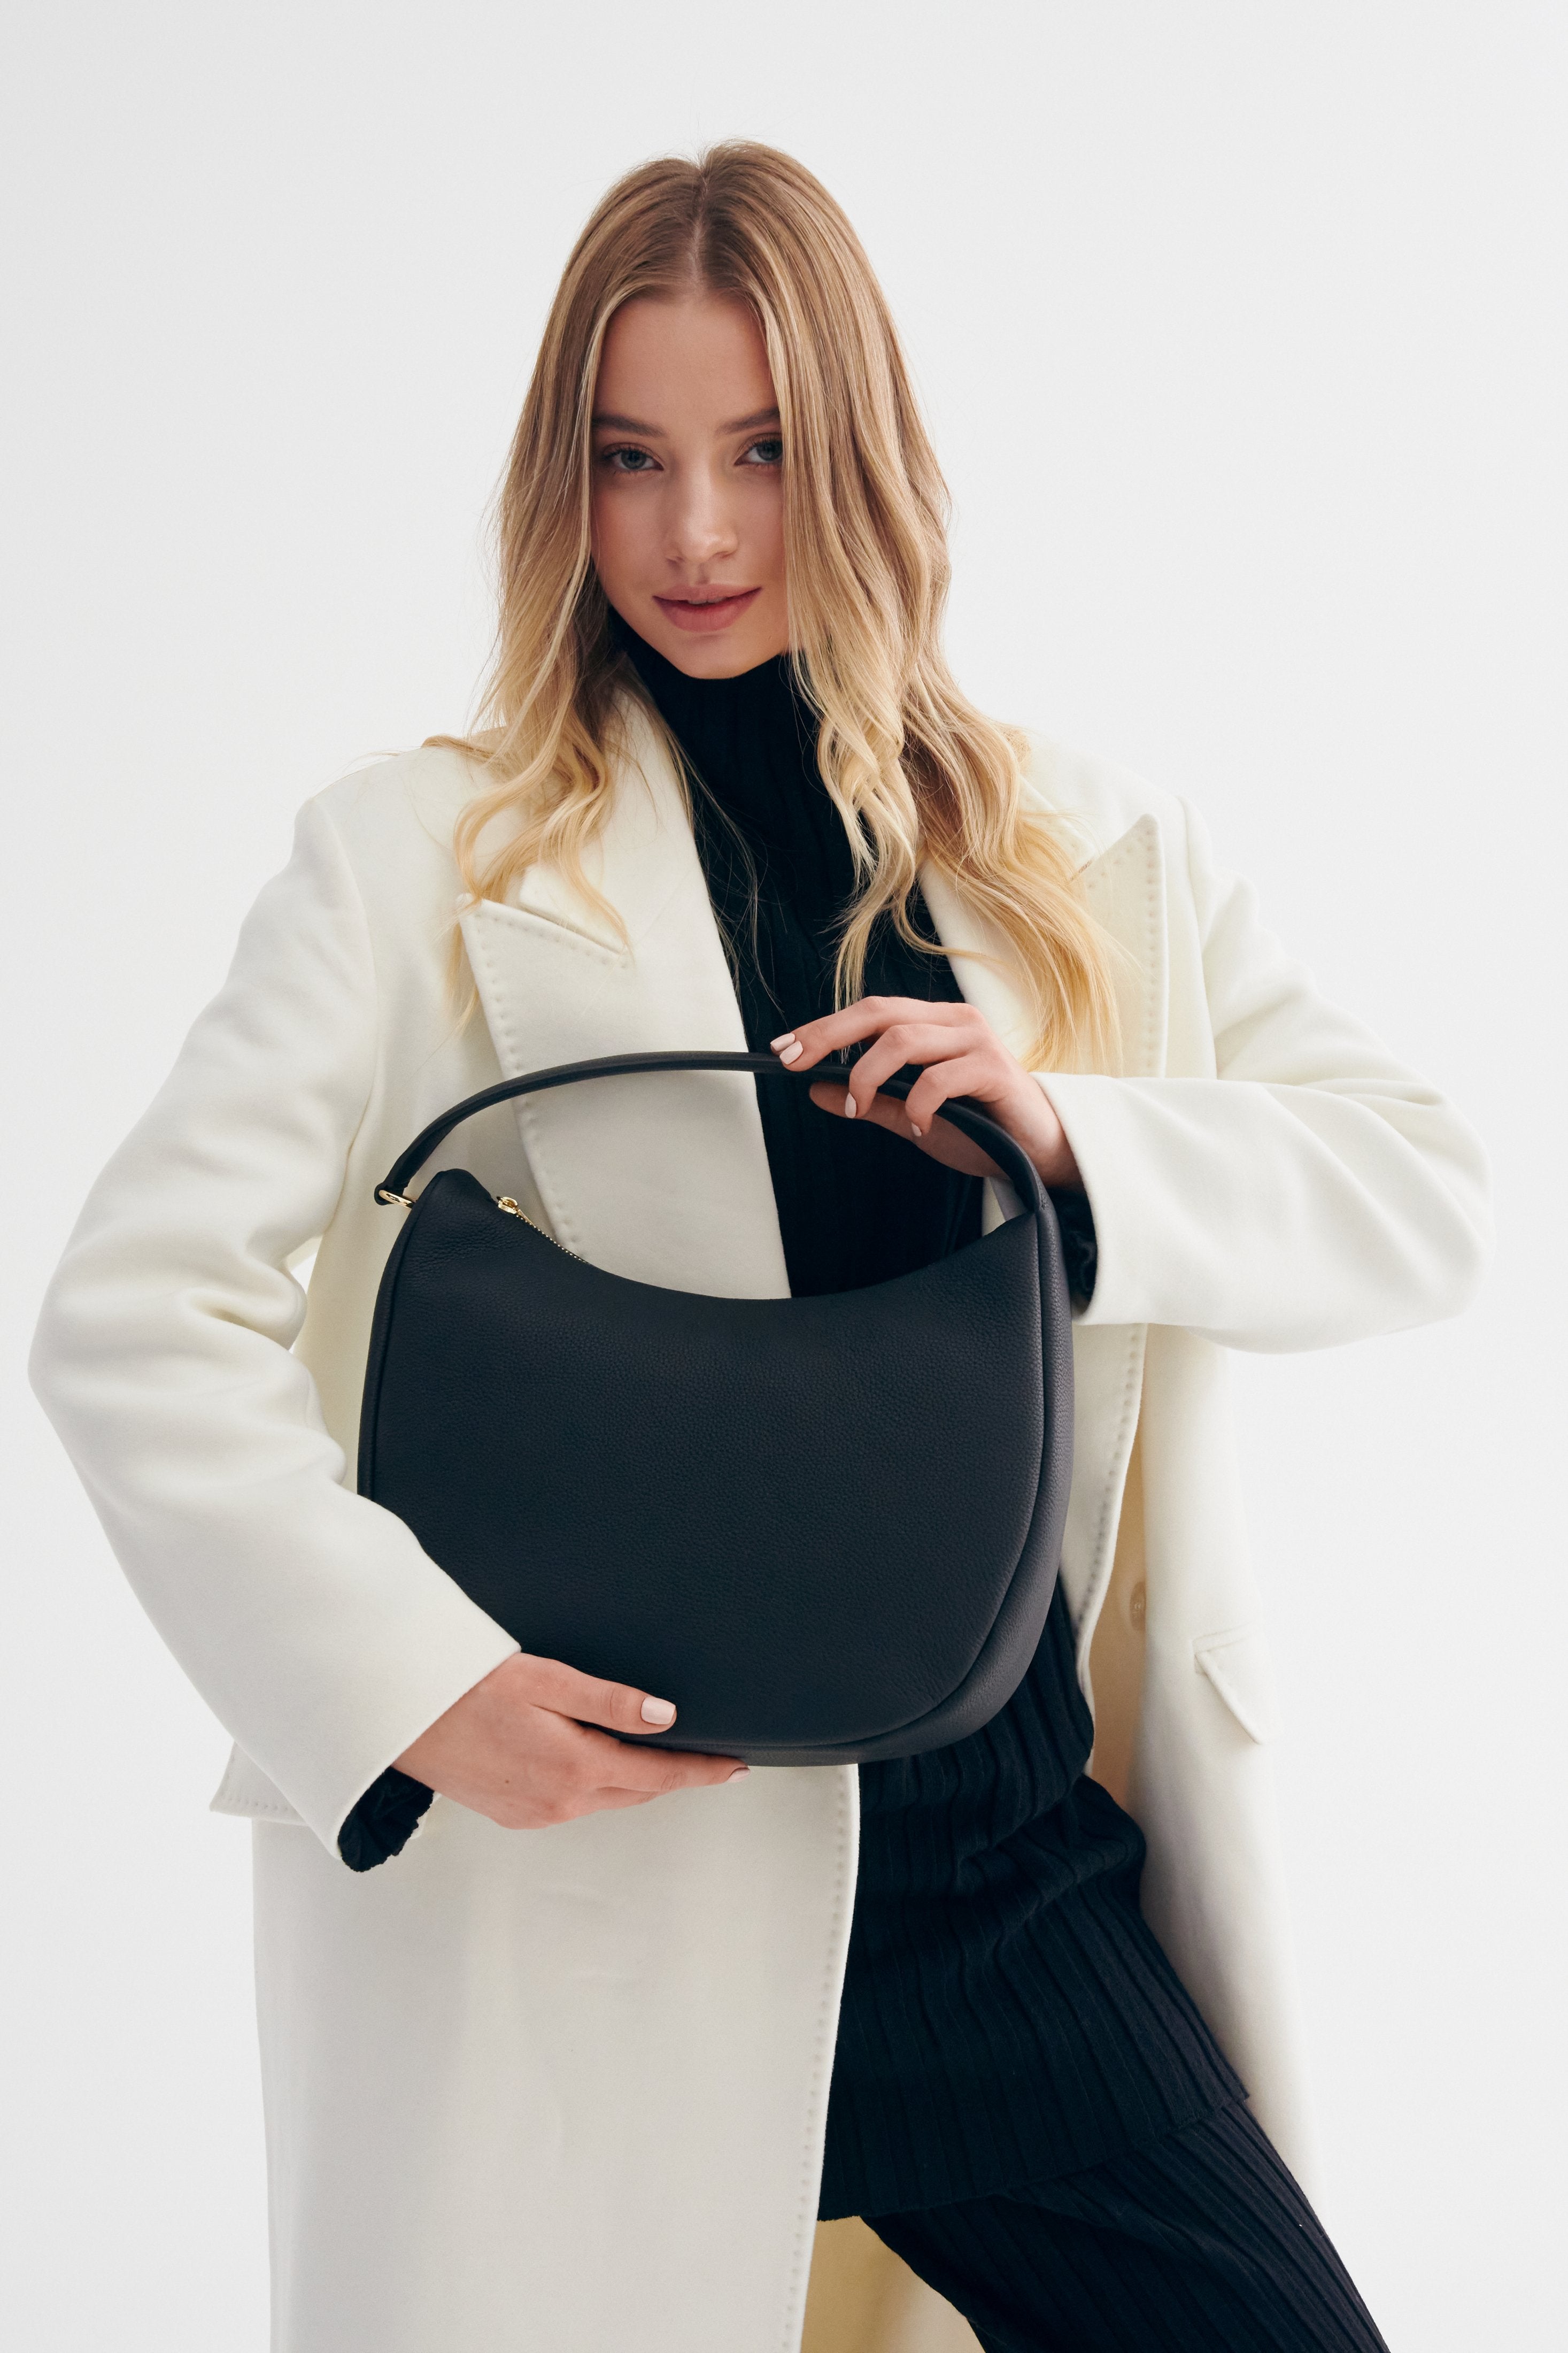 Skórzana czarna torebka do ręki Estro - prezentacja modelu w pełnej stylizacji.